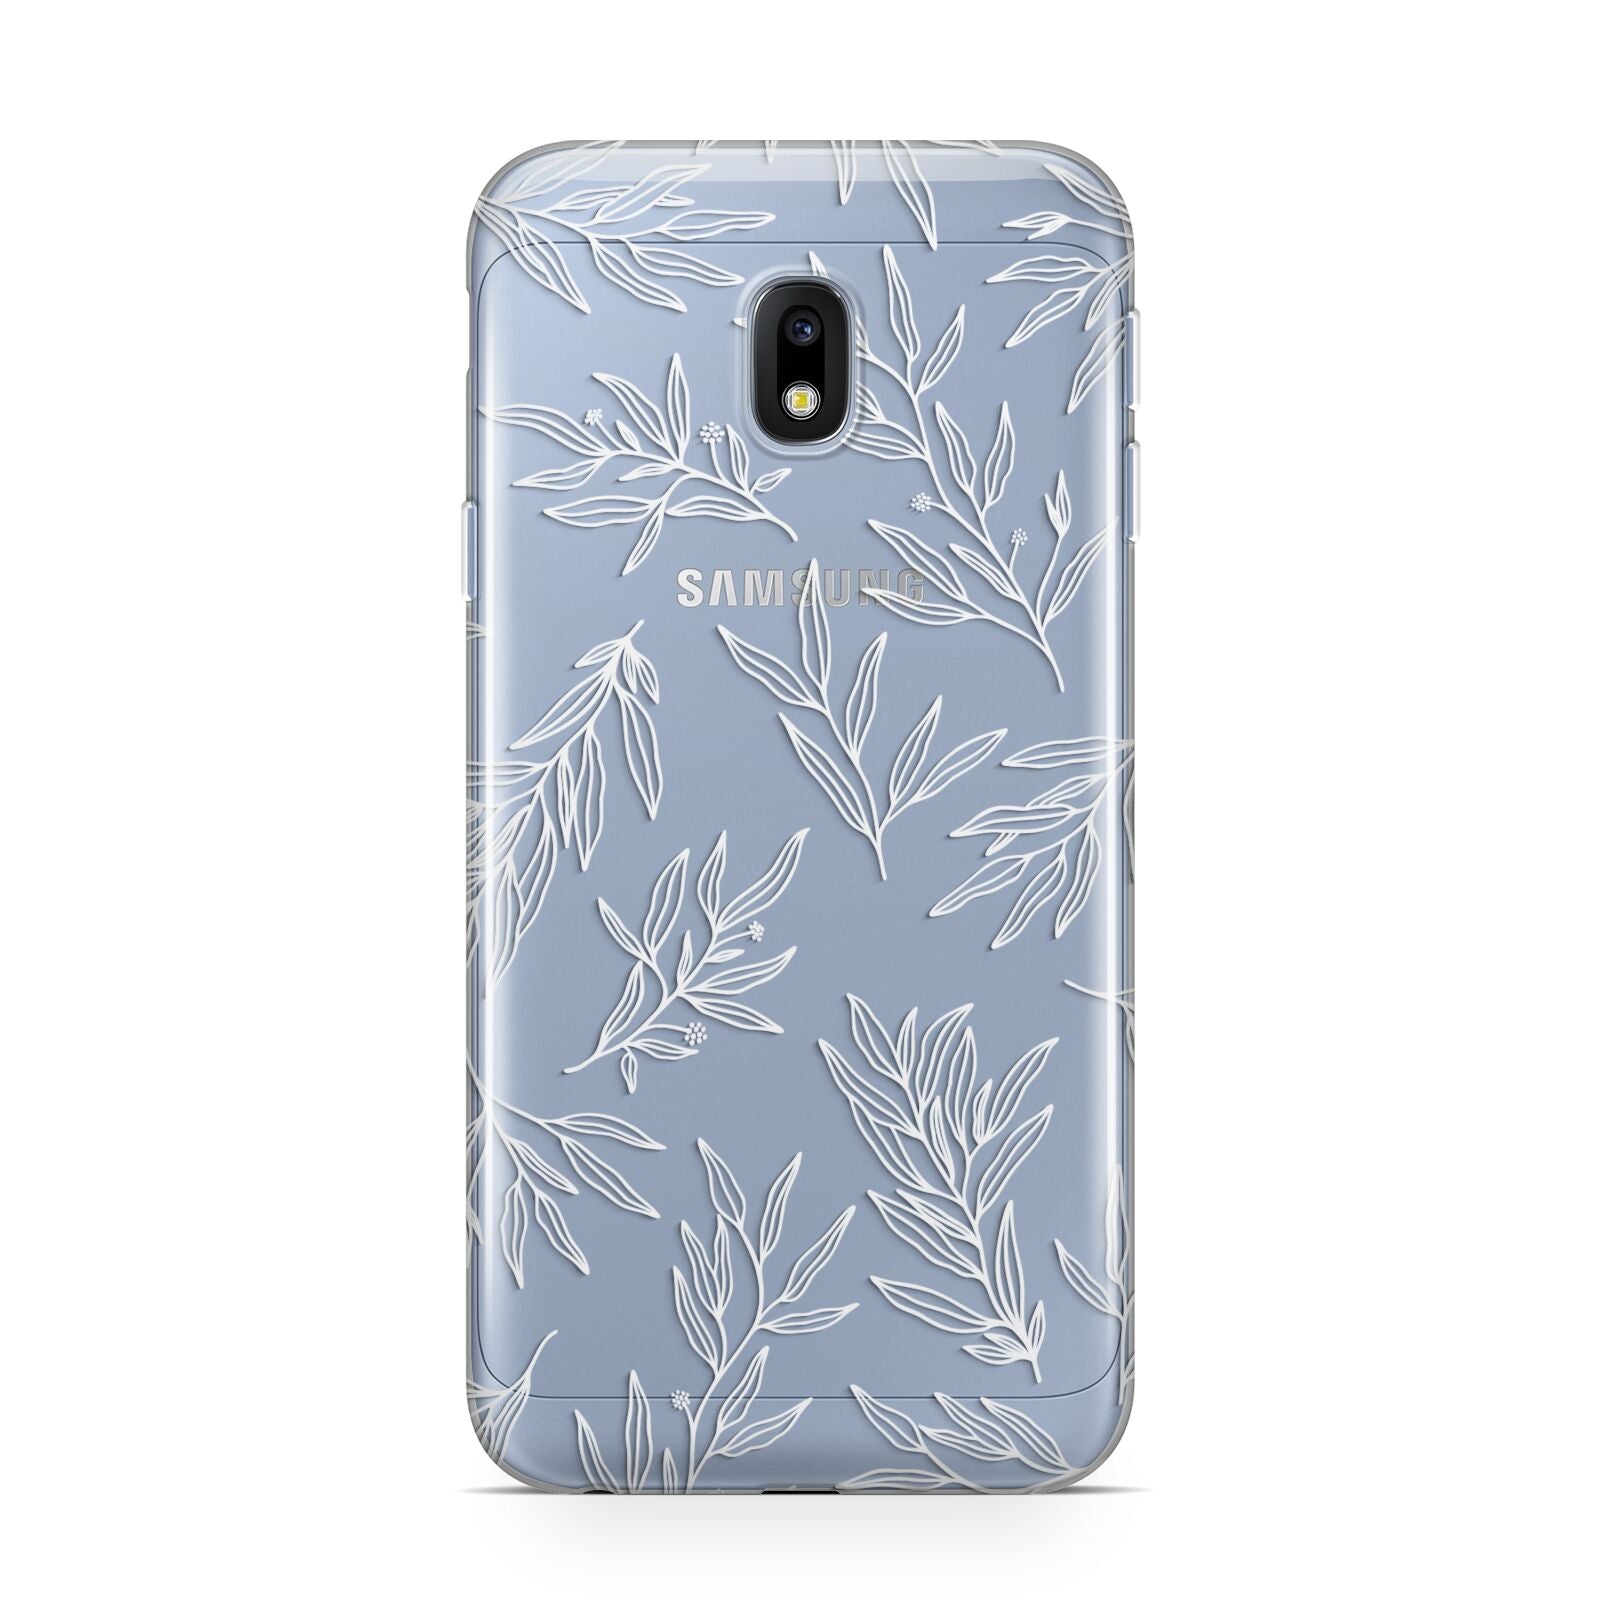 Botanical Leaf Samsung Galaxy J3 2017 Case